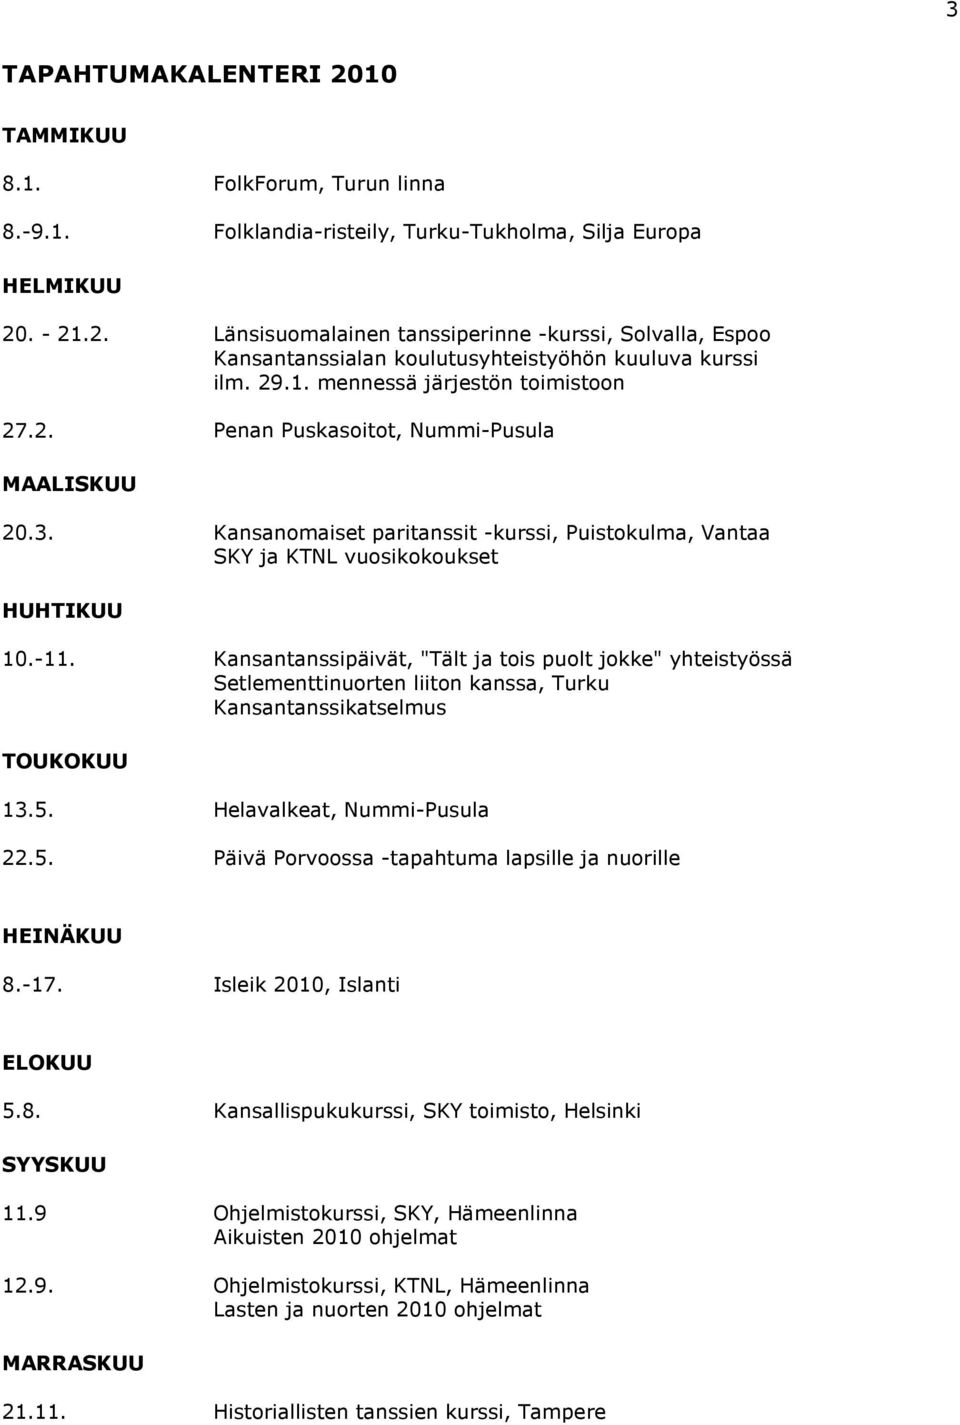 Kansantanssipäivät, "Tält ja tois puolt jokke" yhteistyössä Setlementtinuorten liiton kanssa, Turku Kansantanssikatselmus TOUKOKUU 13.5.